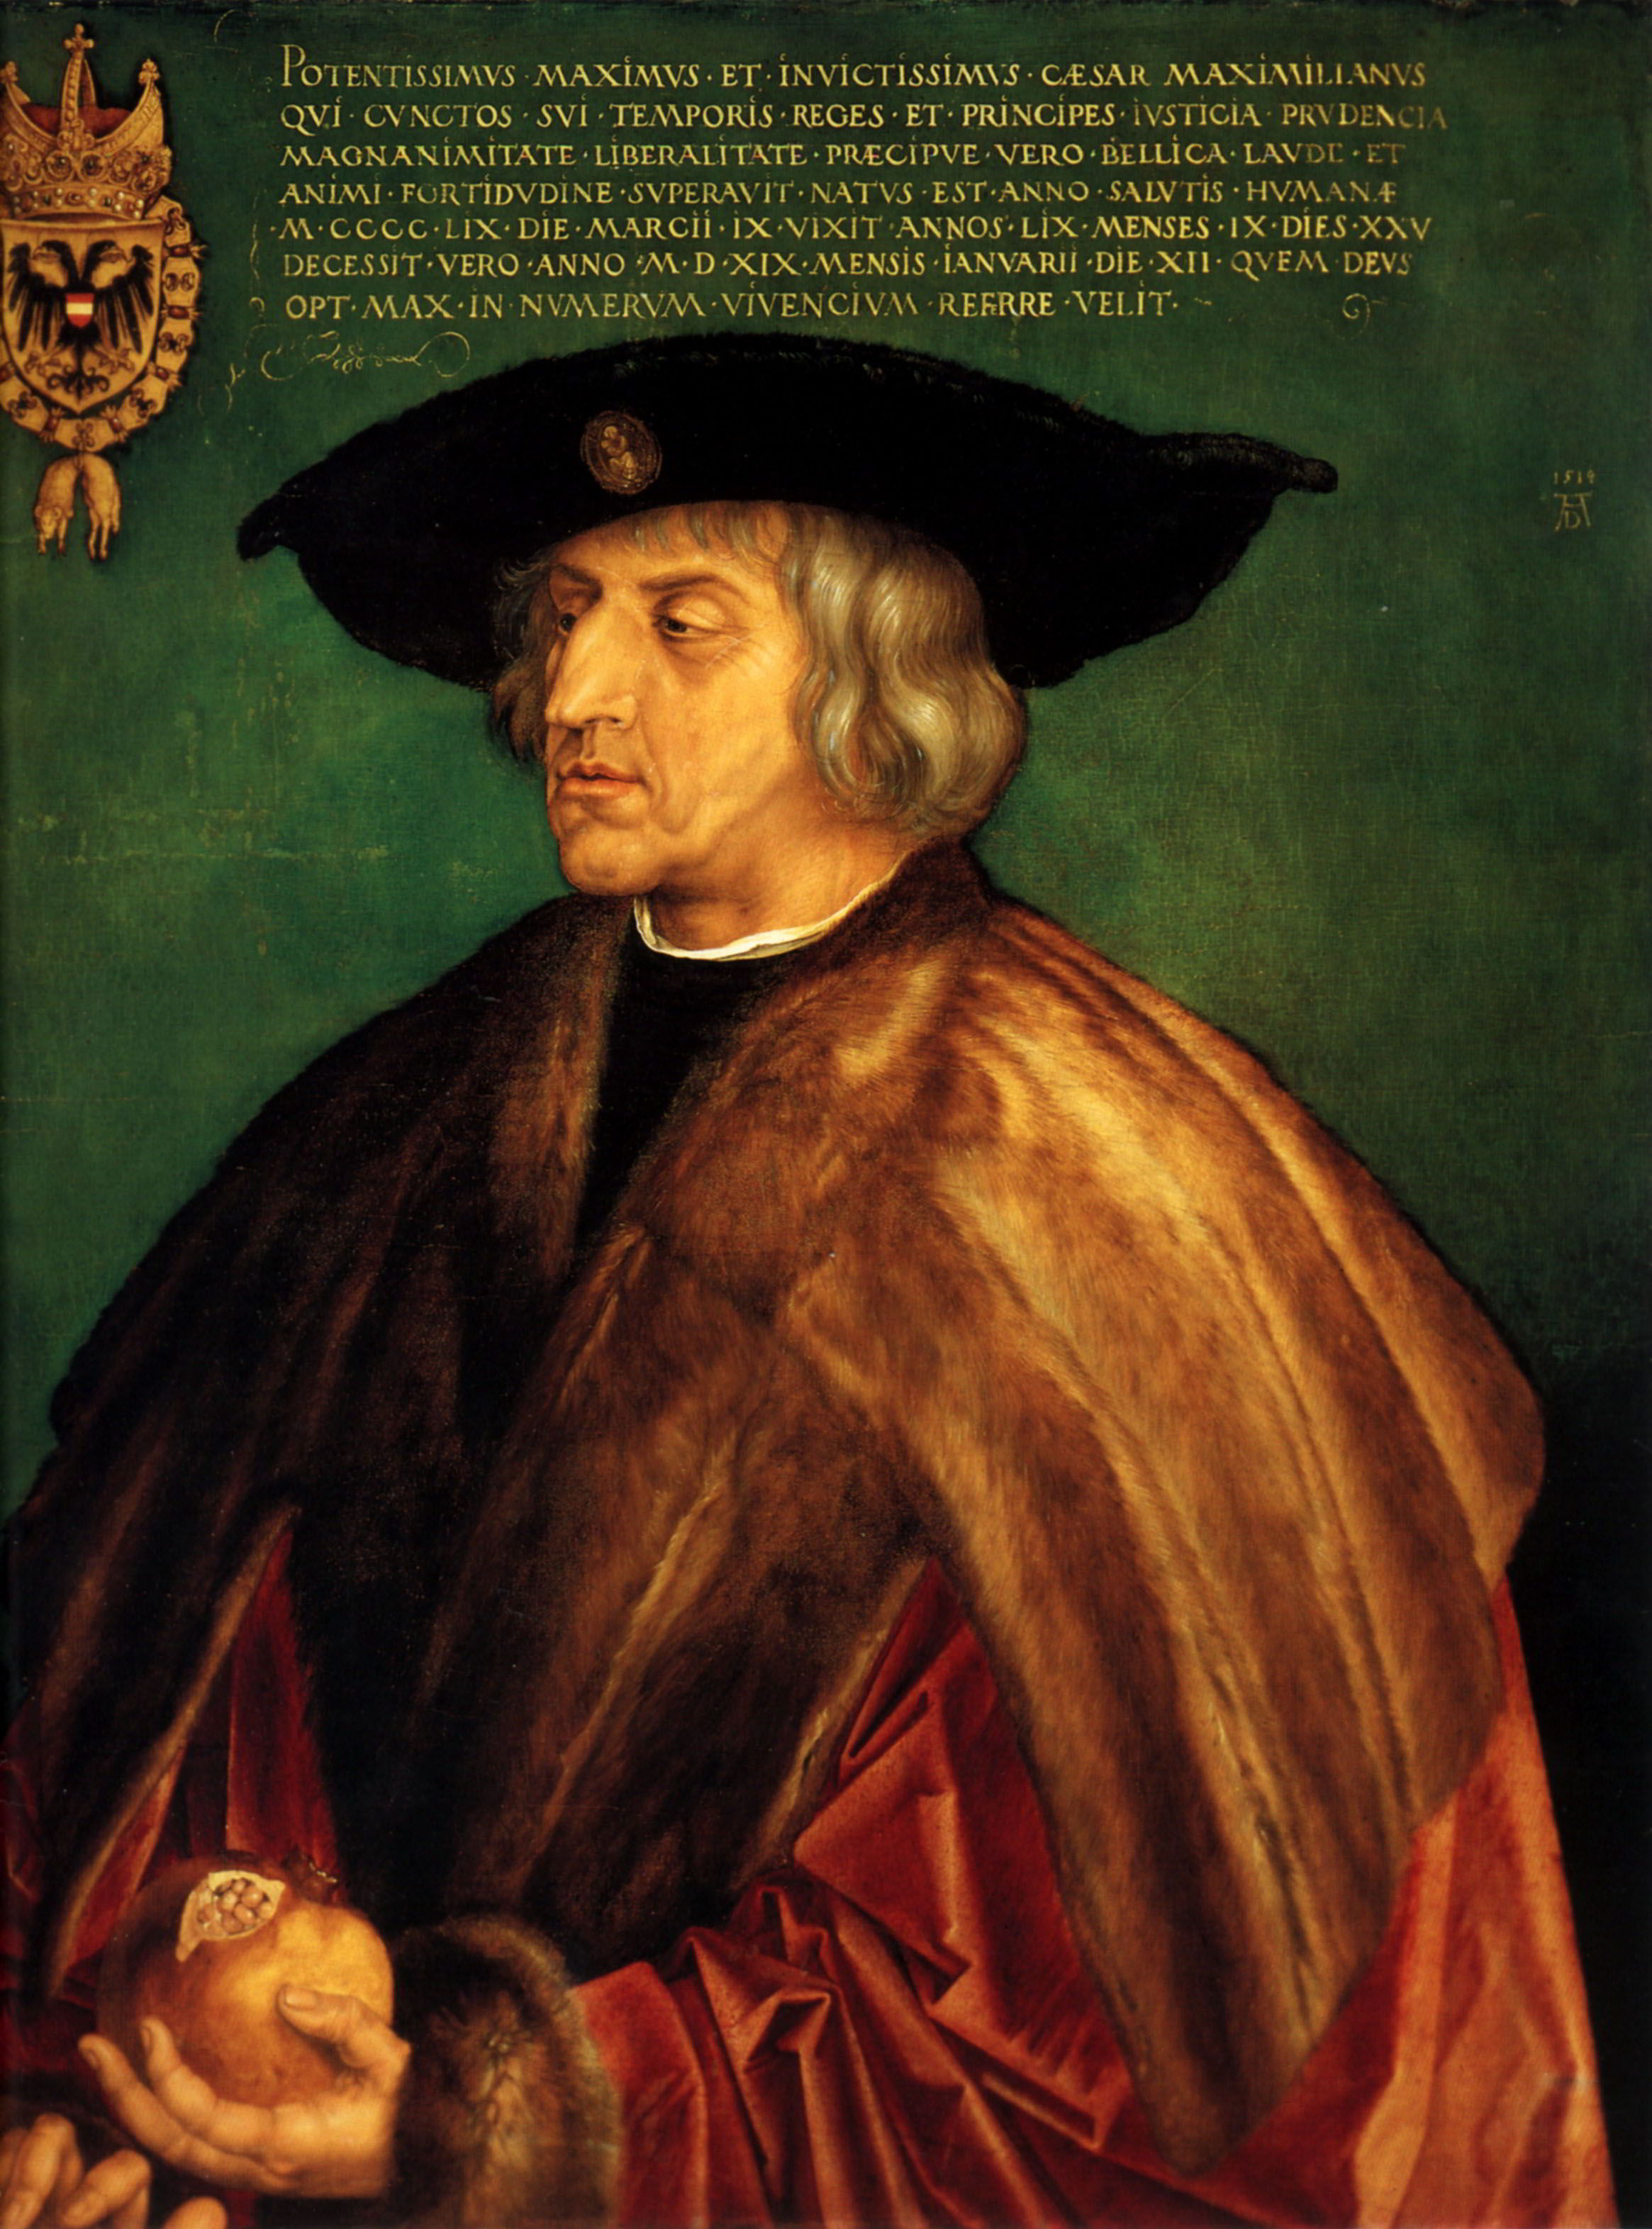 Portrait of Emperor Maximillian I by Albrecht Durer